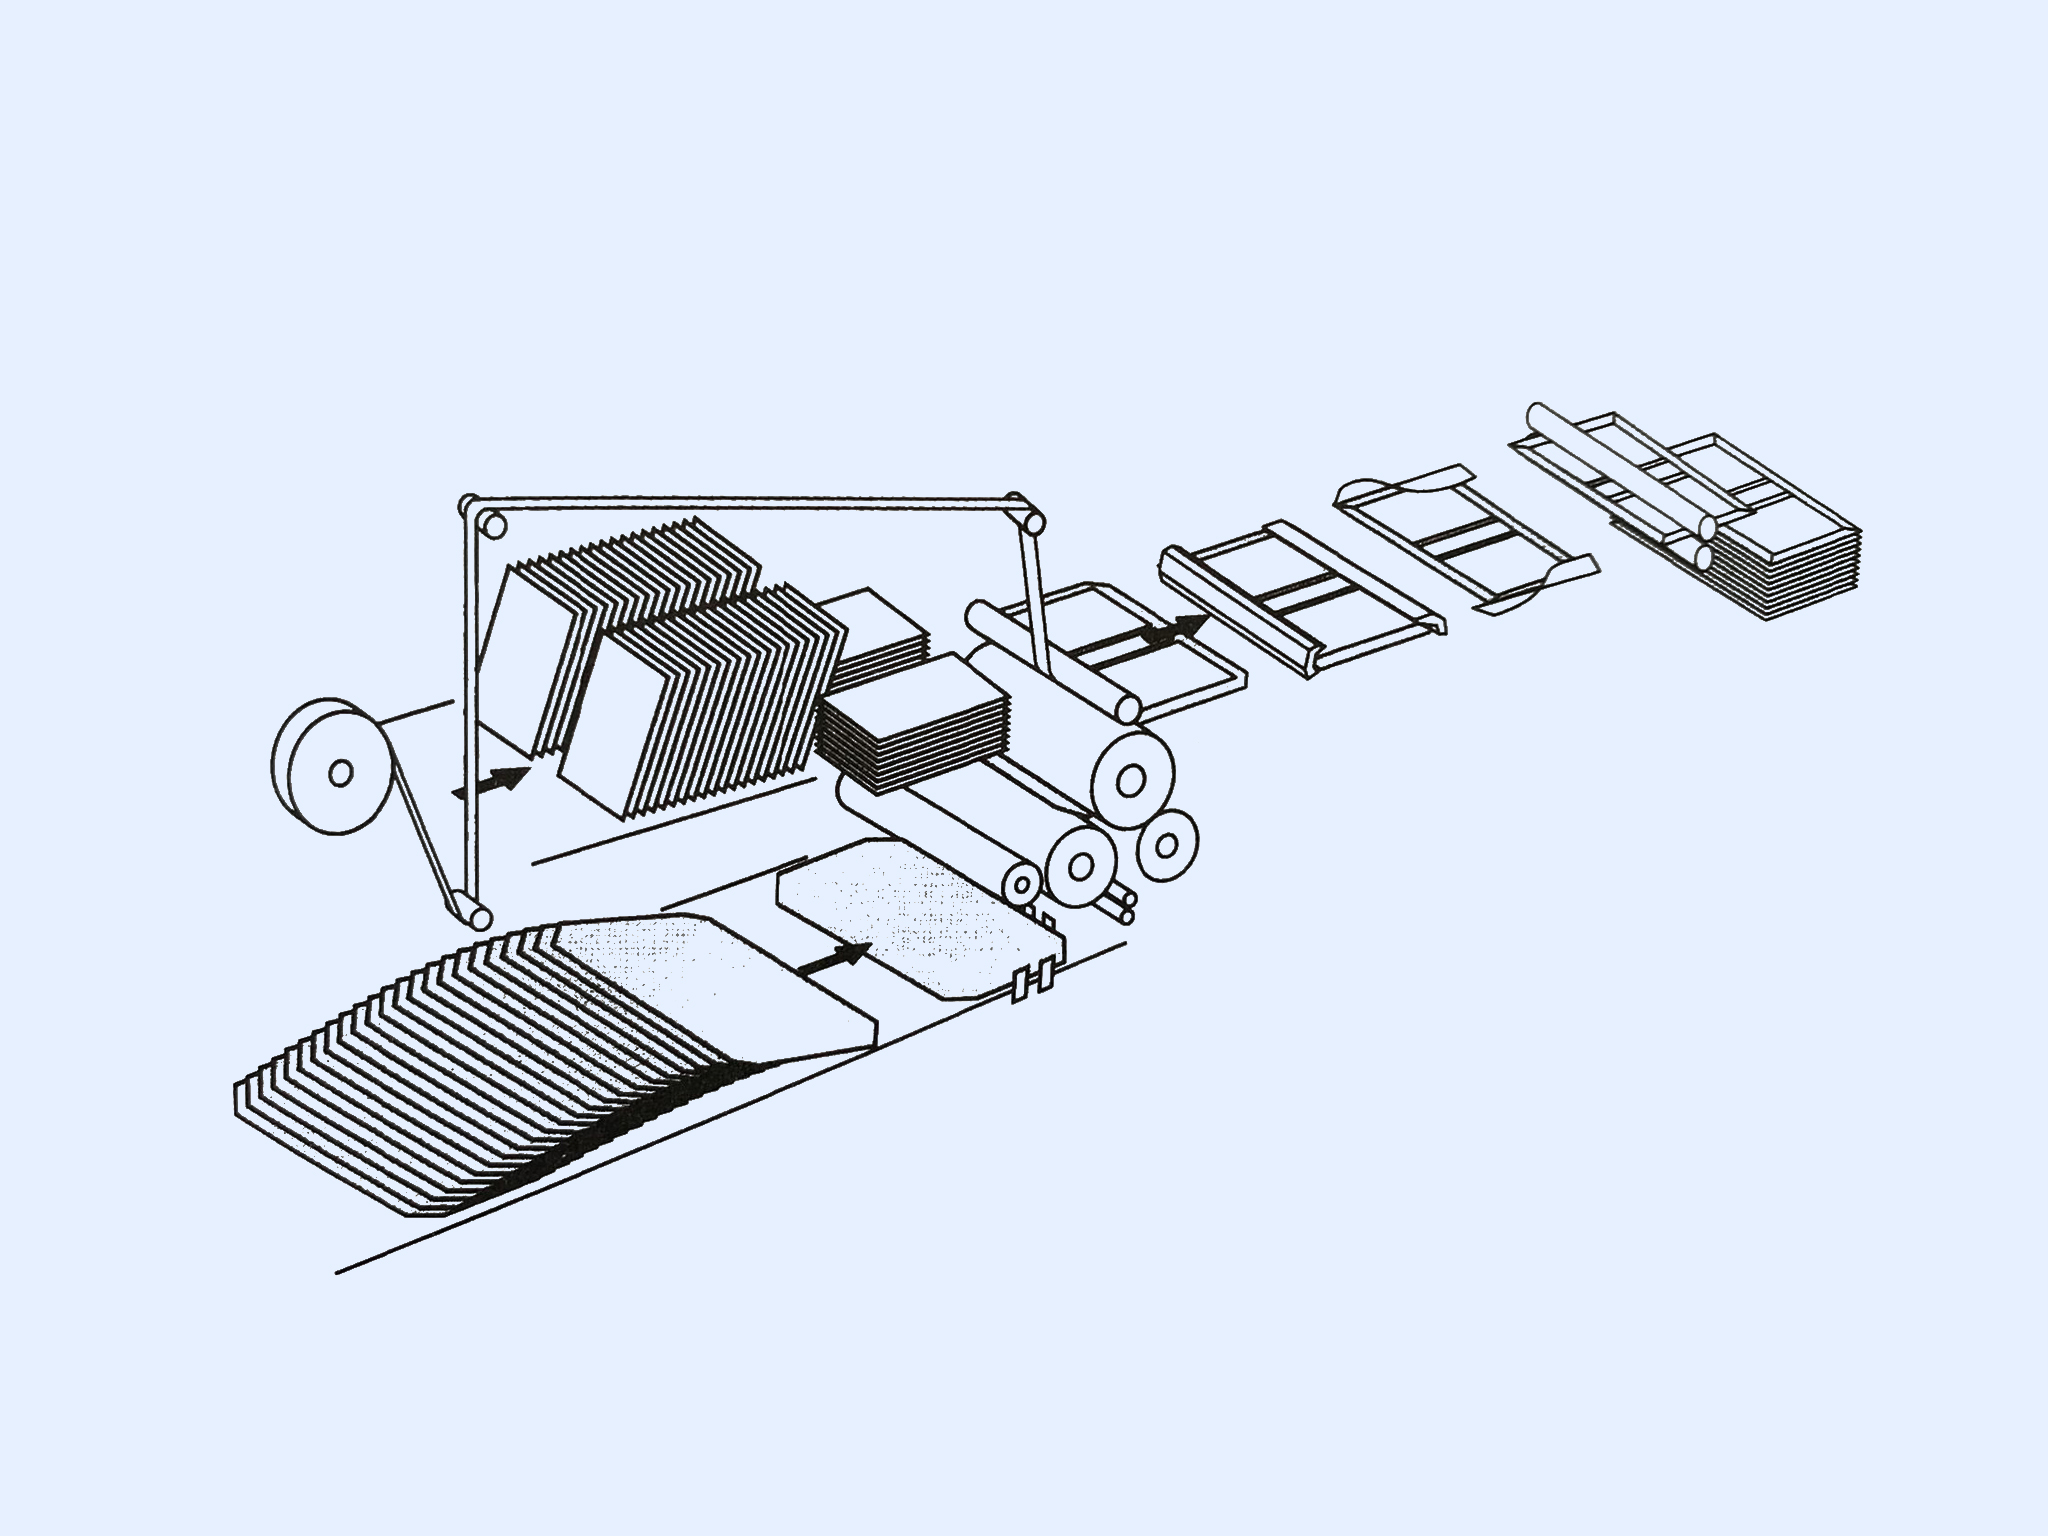 Grafische Darstellung einer Buchdeckenmaschine mit horizontalem verarbeitungsprinzip und durchlaufprinzip, die in der industriellen Buchbinderei eingesetzt wird. Illustration schwarz, Hintergrund hellblau